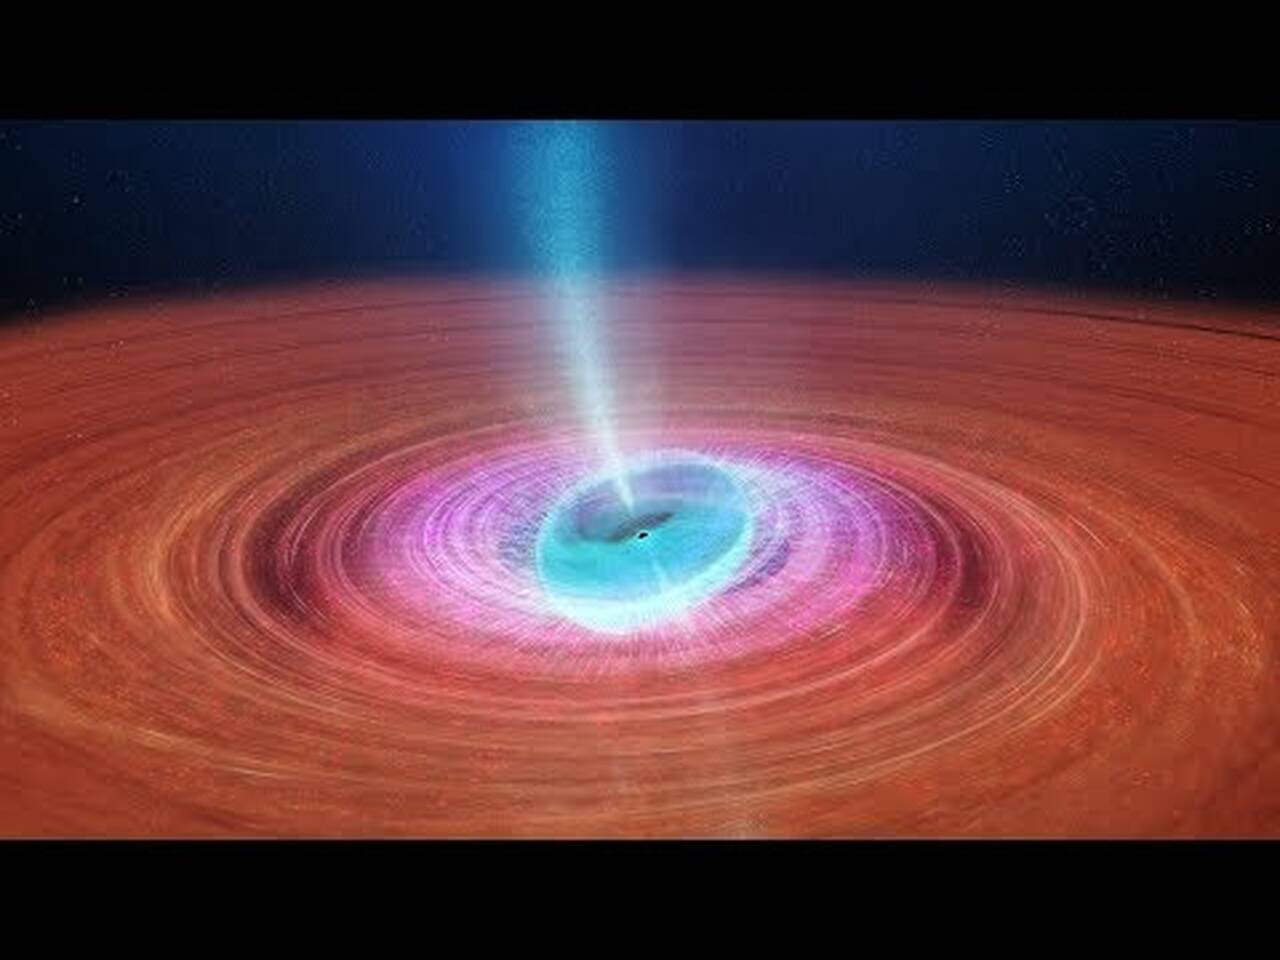 Μαύρη τρύπα εκτοξεύει πλάσμα στο διάστημα (βίντεο)